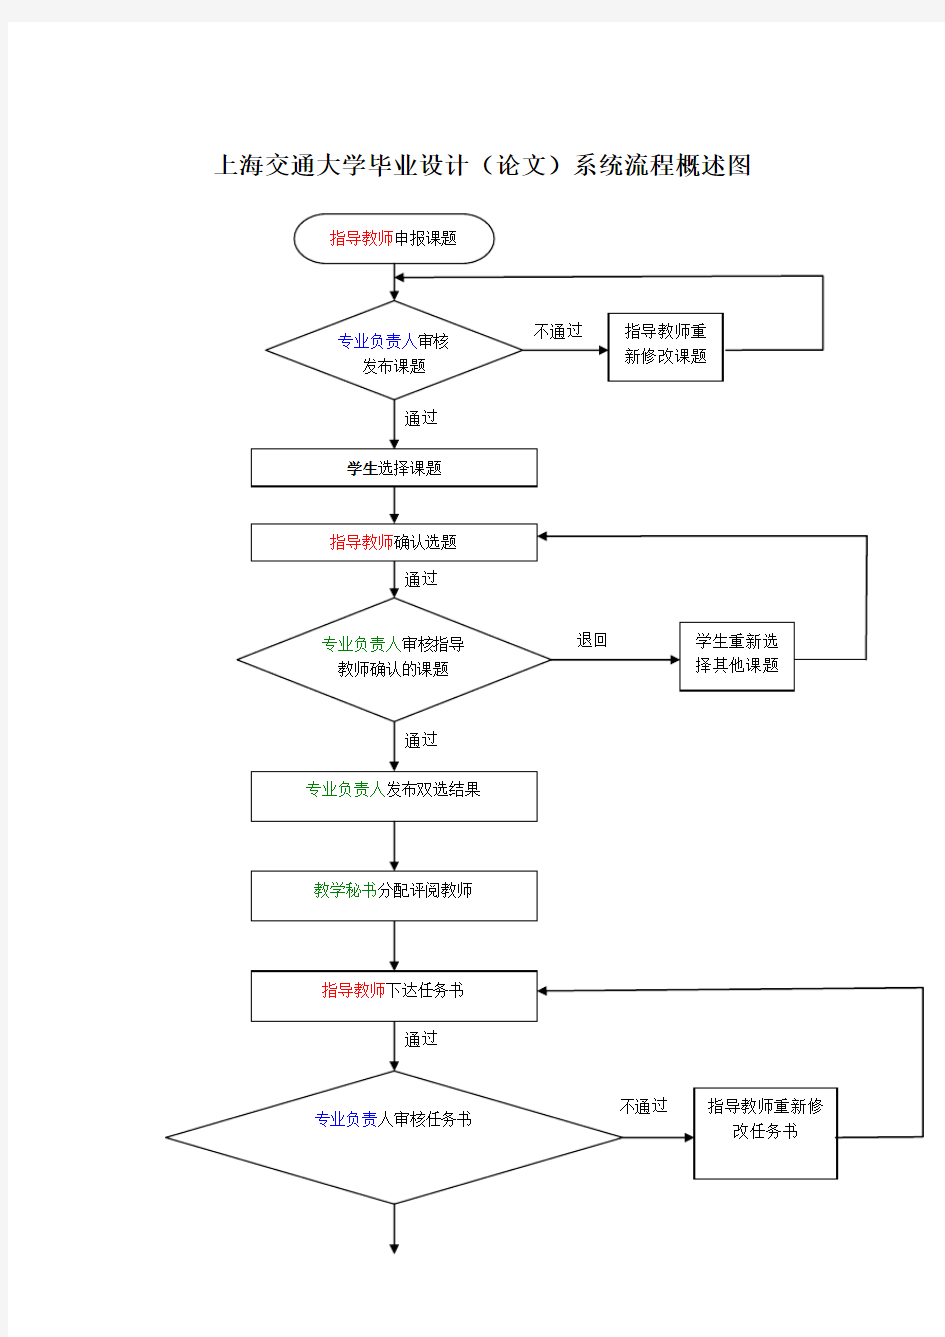 上海交通大学毕业设计论文系统流程概述图